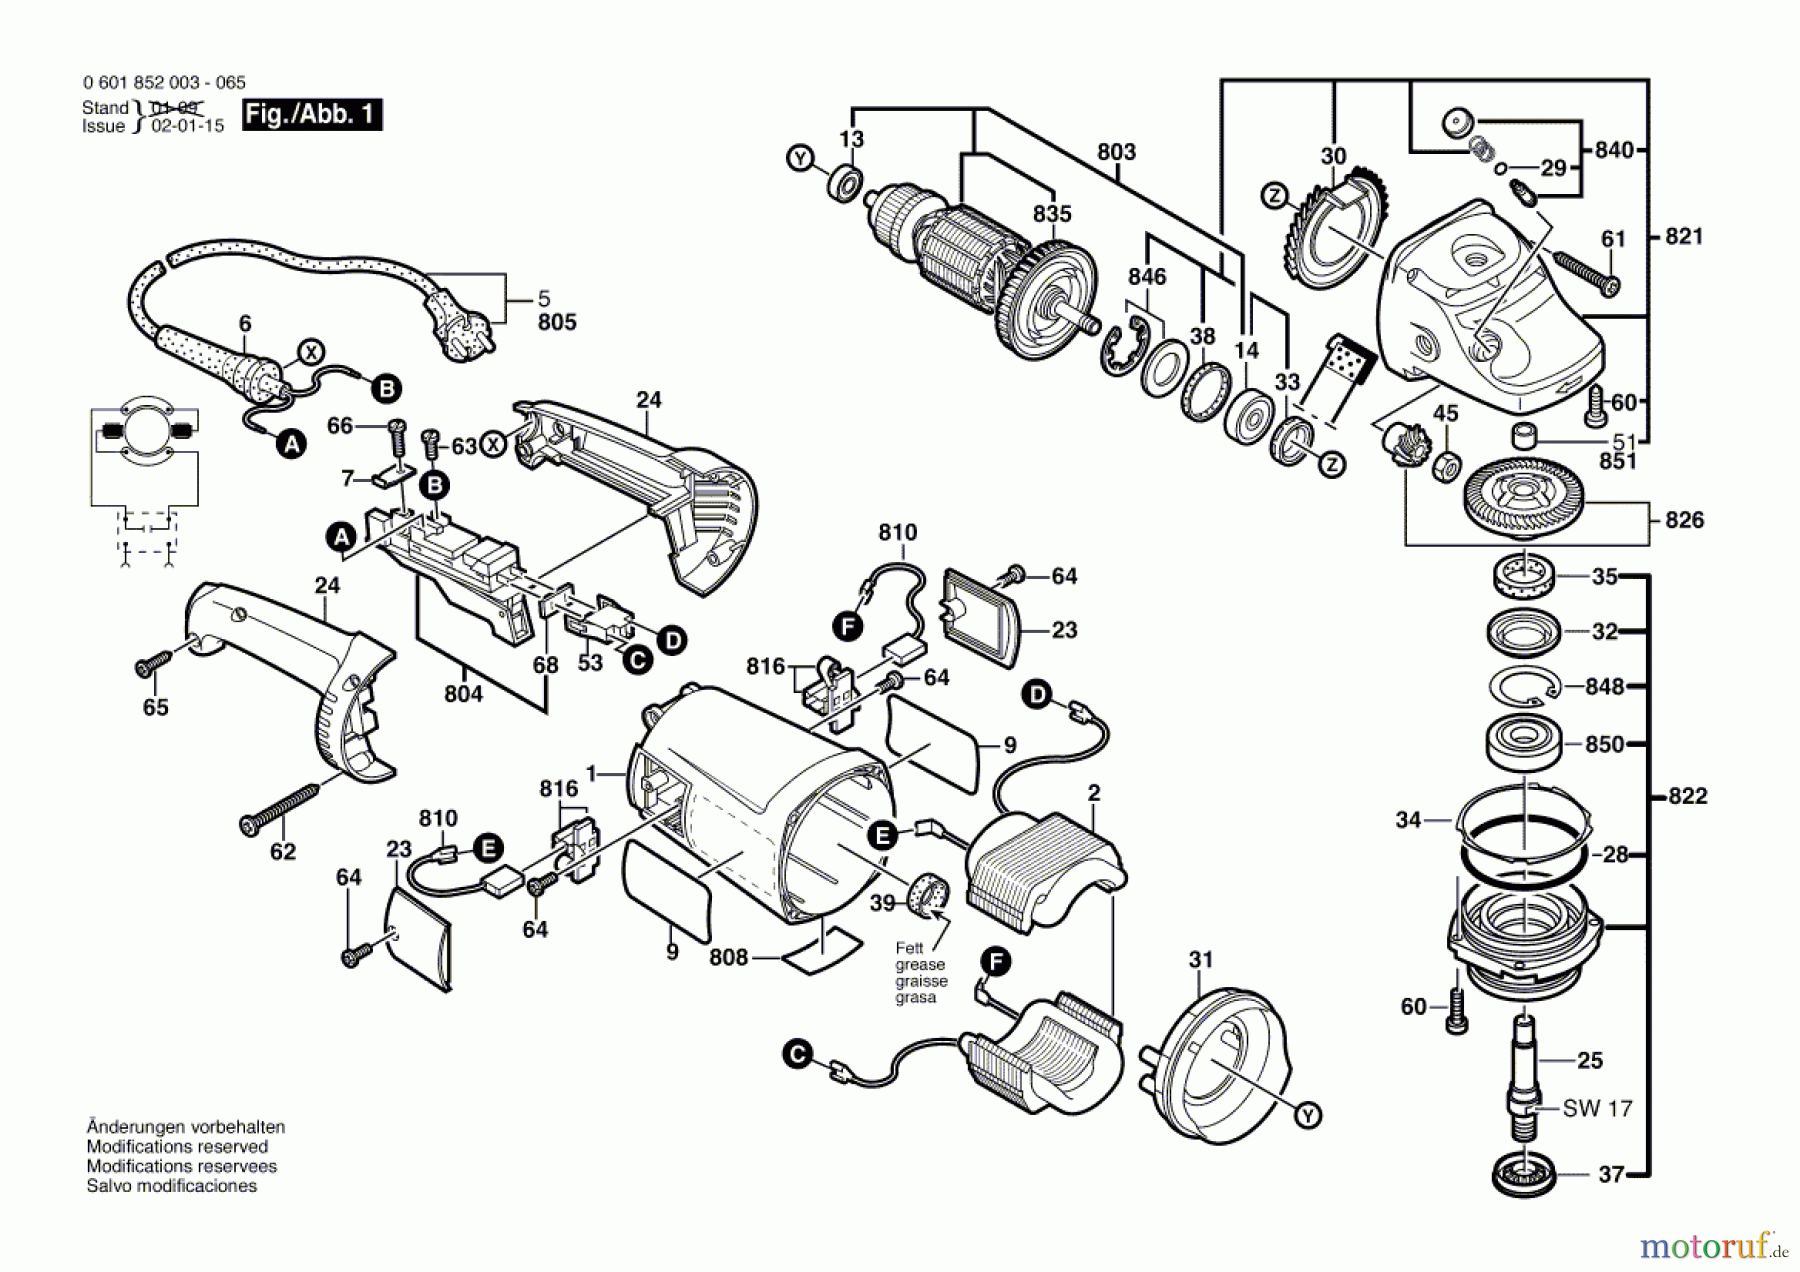  Bosch Werkzeug Winkelschleifer GWS 21-230 H Seite 1